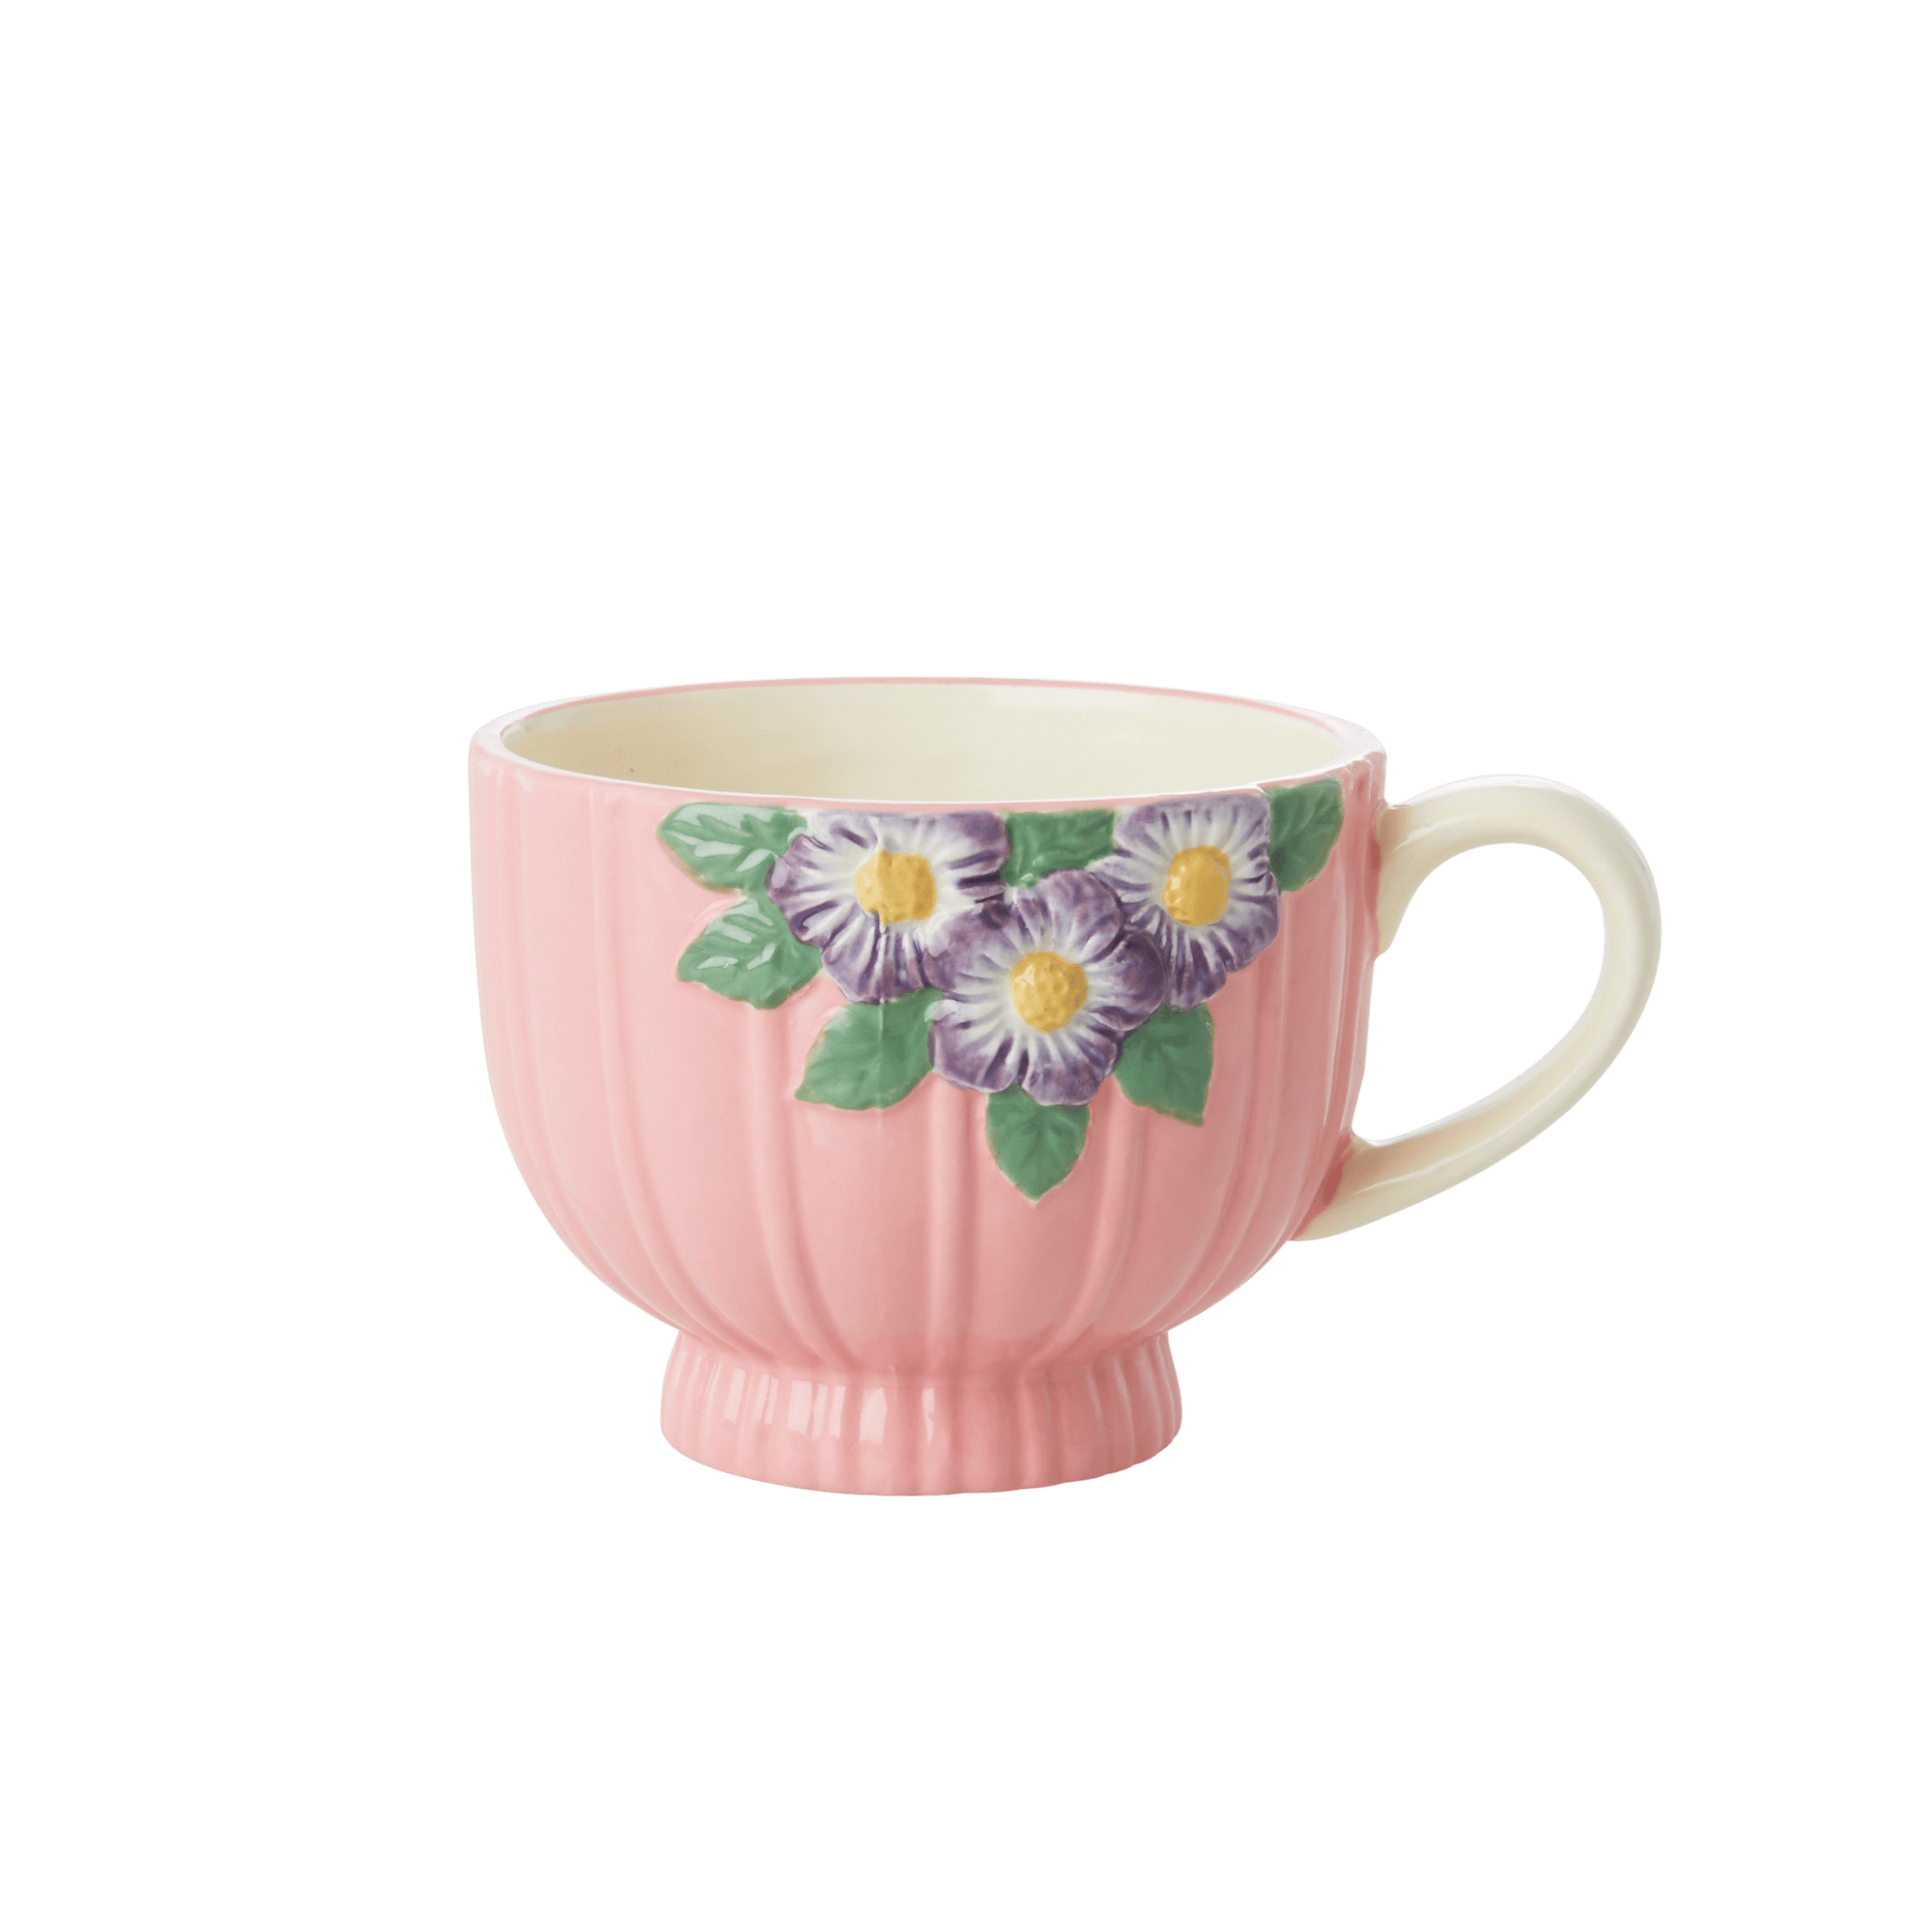 Rice - Keramik Krus - Pink Blomster Design